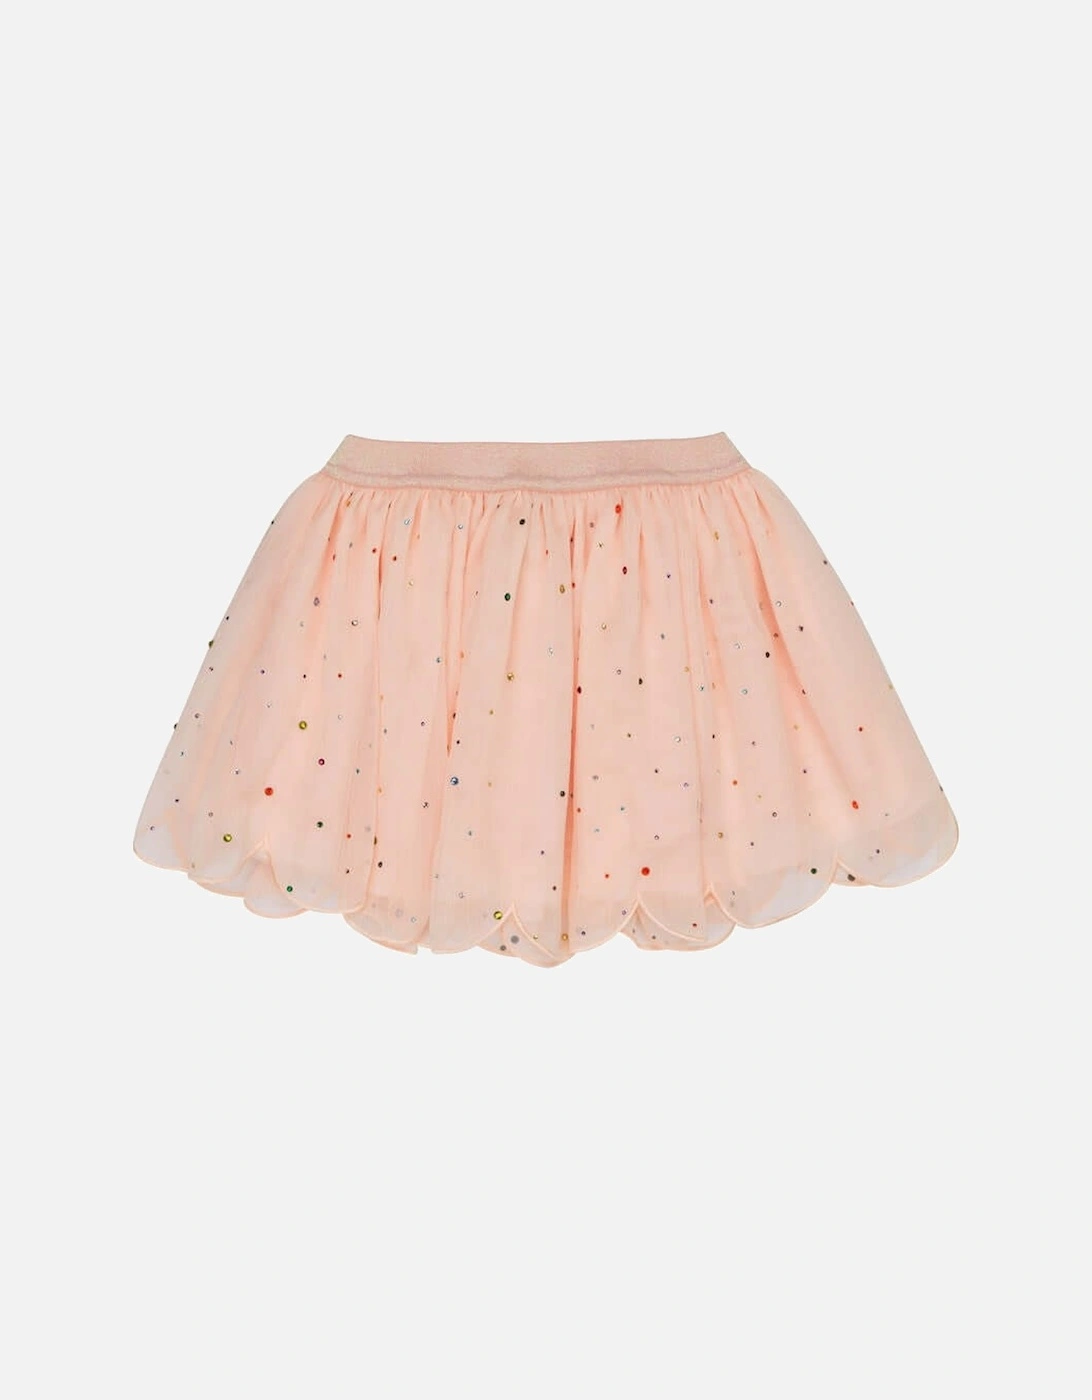 Girls Pink Tulle Skirt, 2 of 1